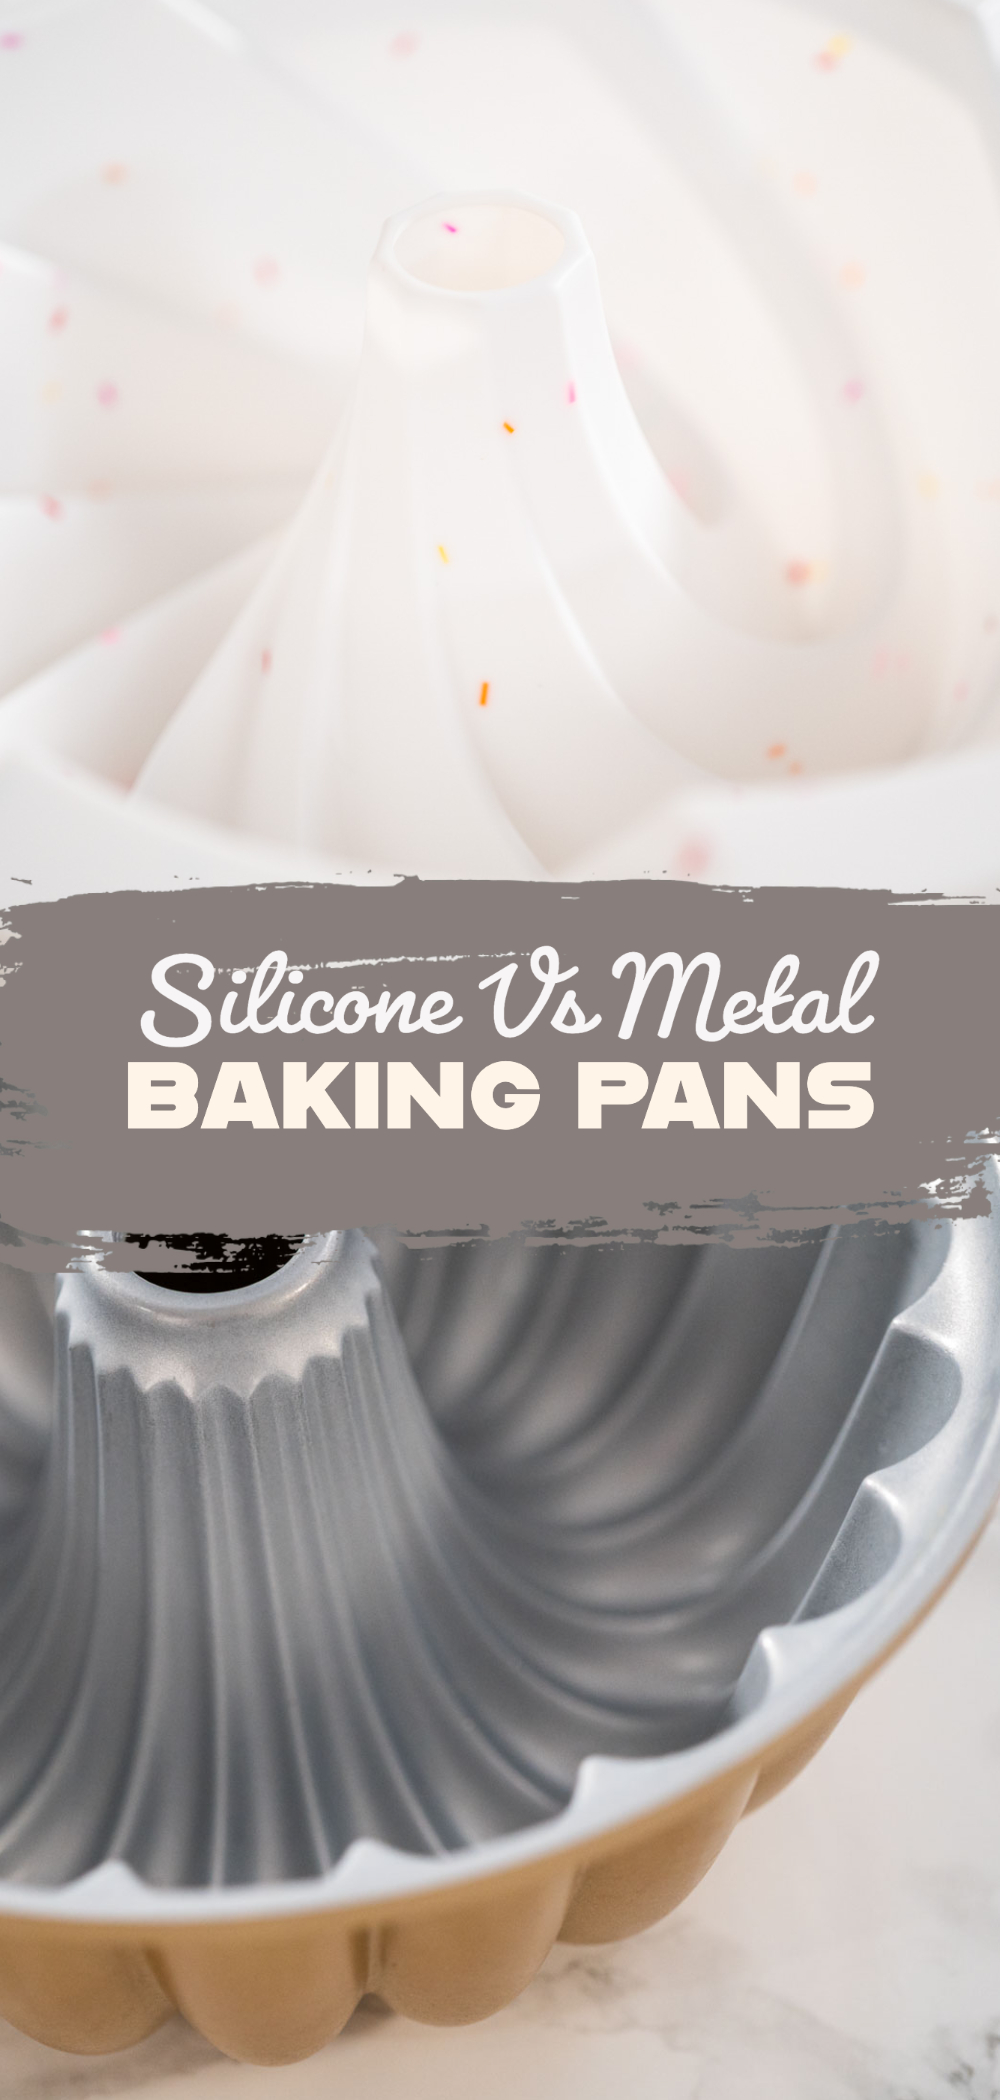 Silicone vs metal baking pans